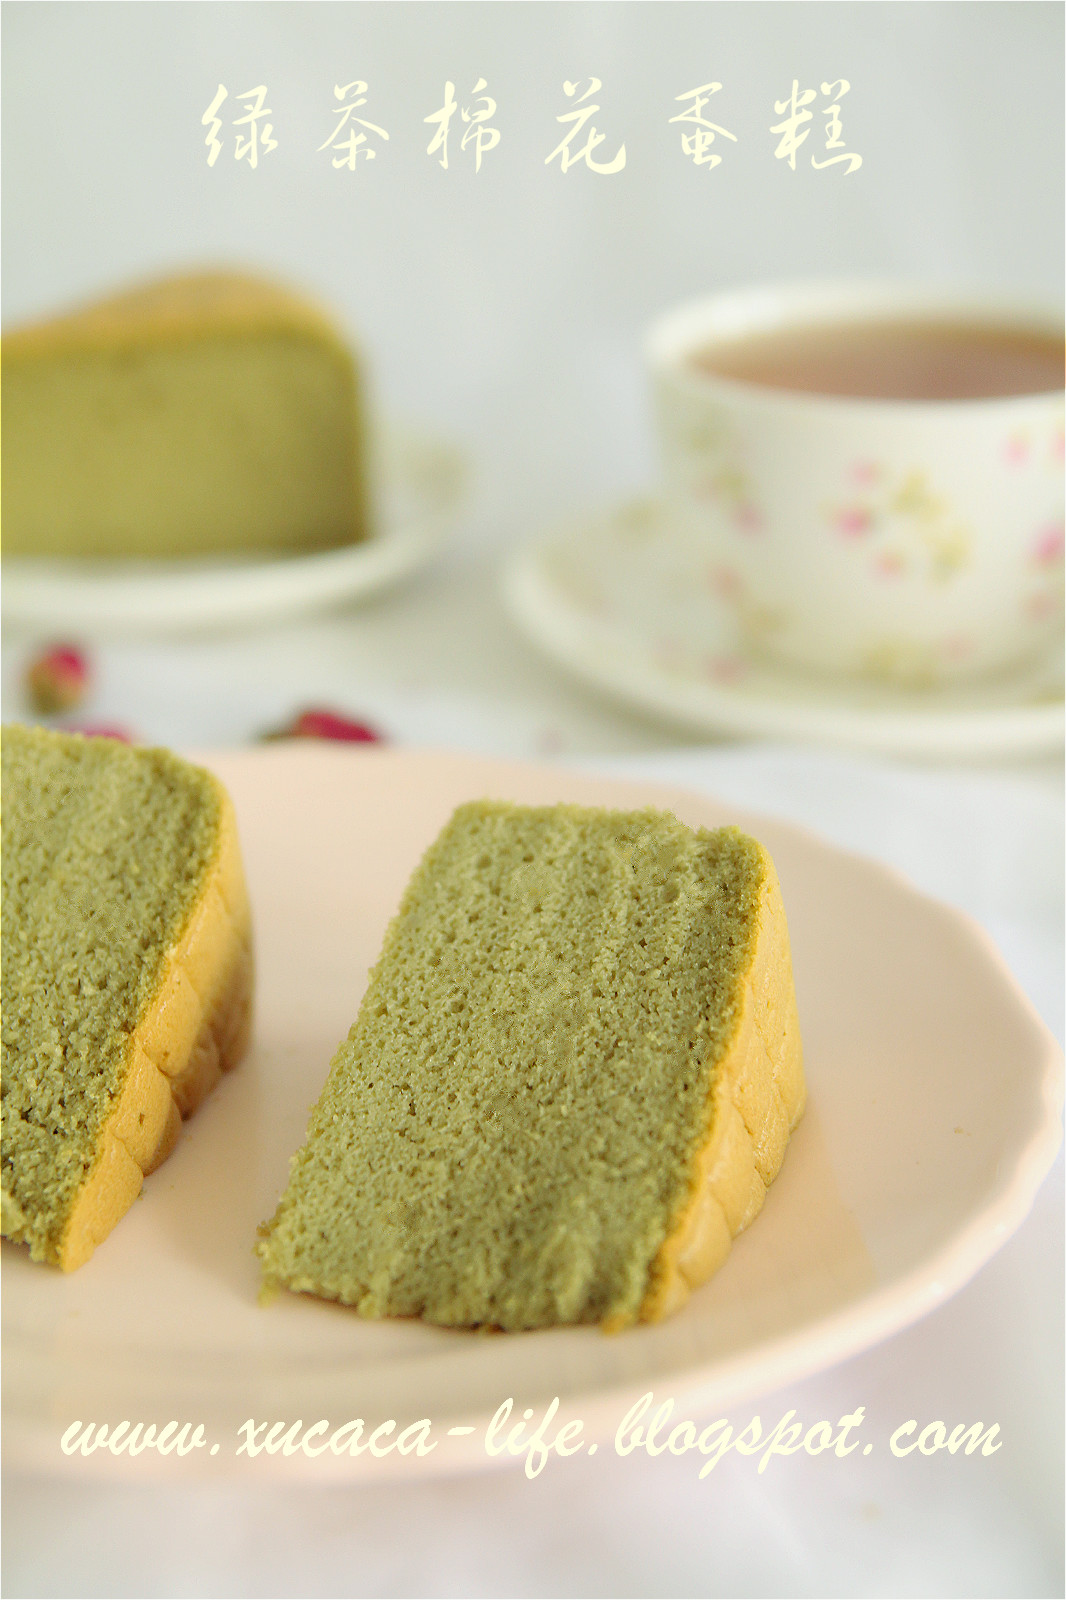 特写镜头matcha在咖啡店的绿茶蛋糕与自然backgro 库存图片 - 图片 包括有 甜甜, 咖啡: 83457641